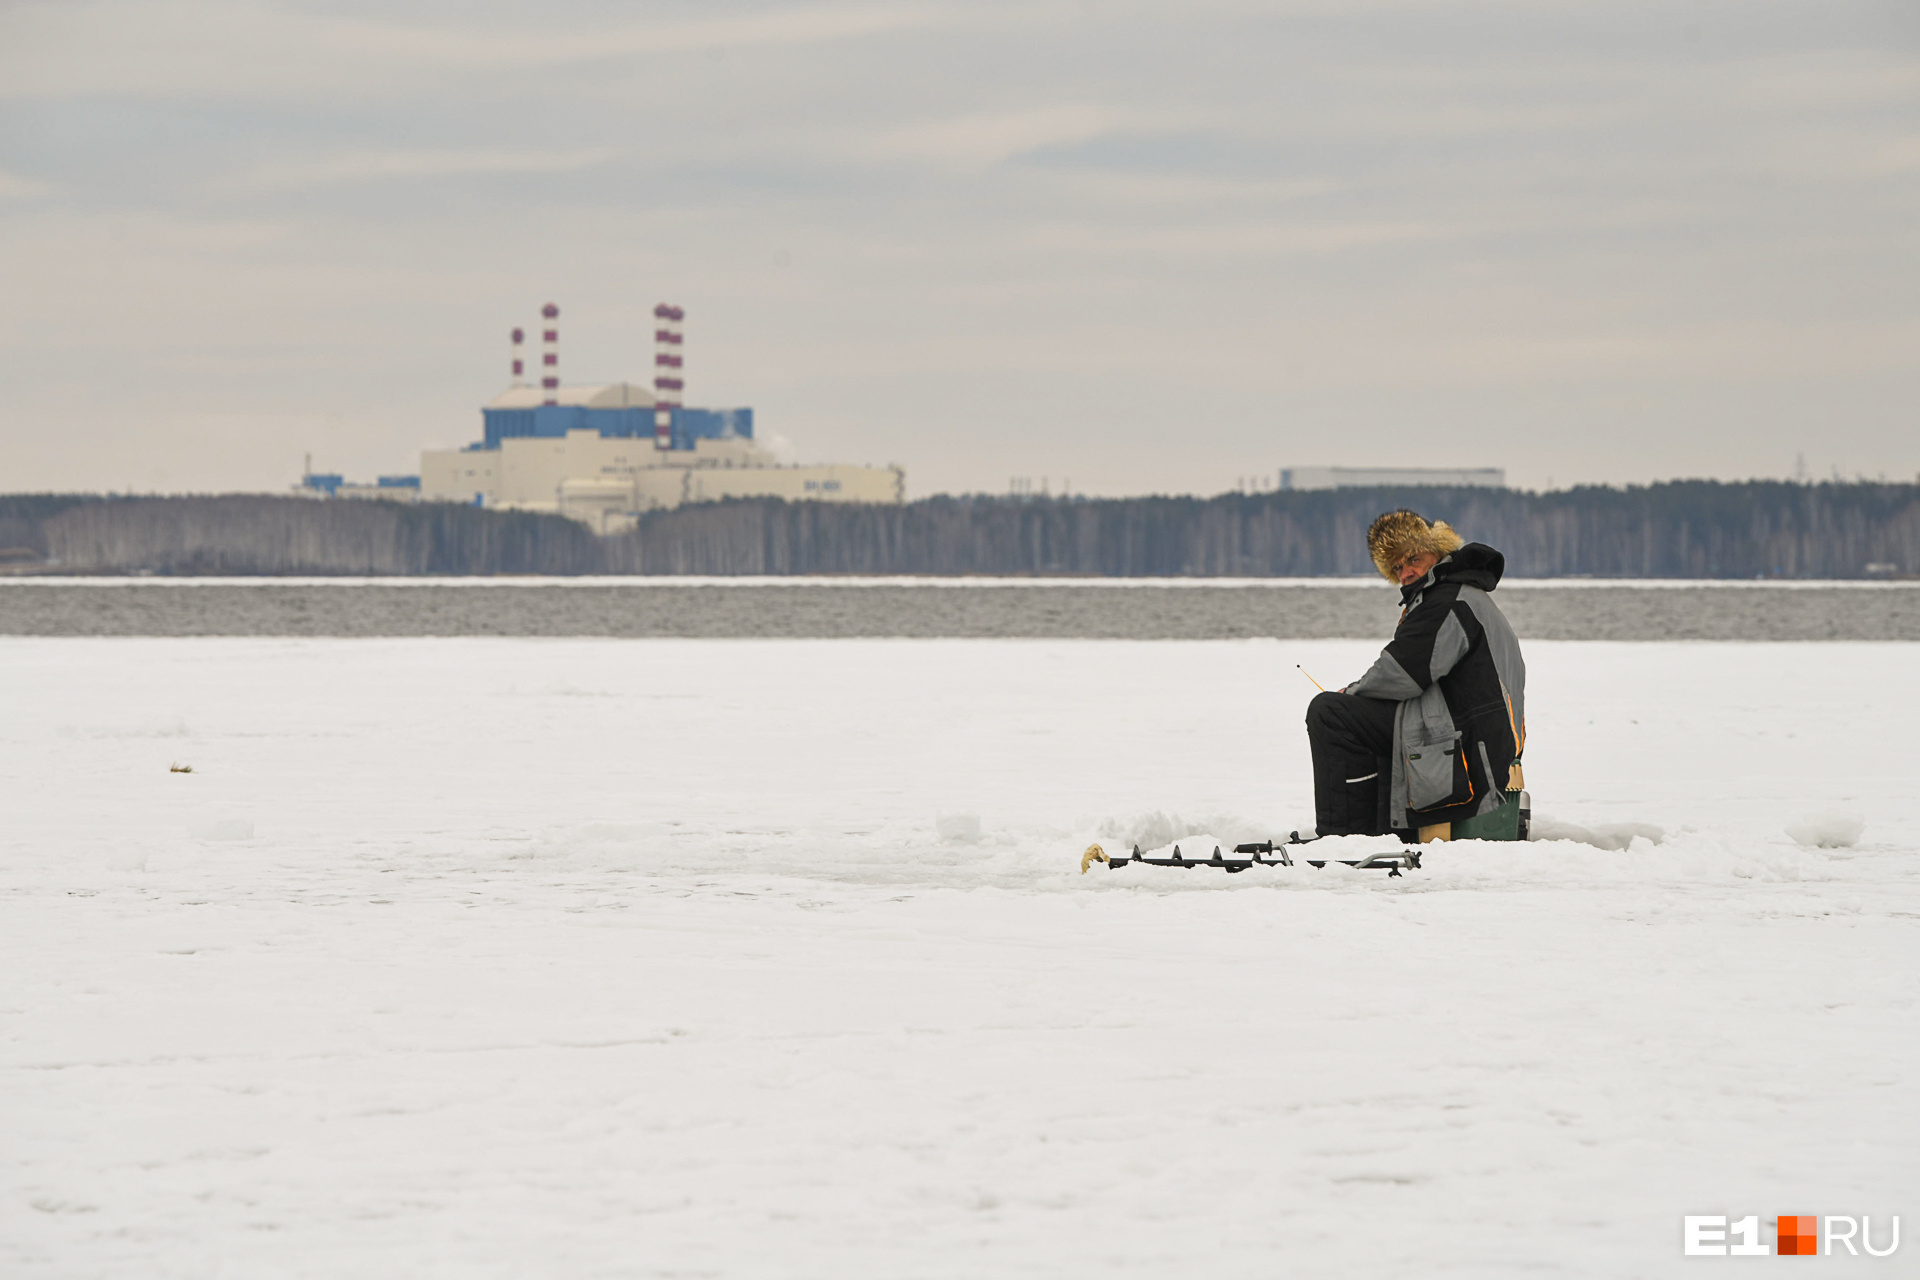 Валерий Георгиевич был в числе последних рыбаков, эвакуированных со льдины